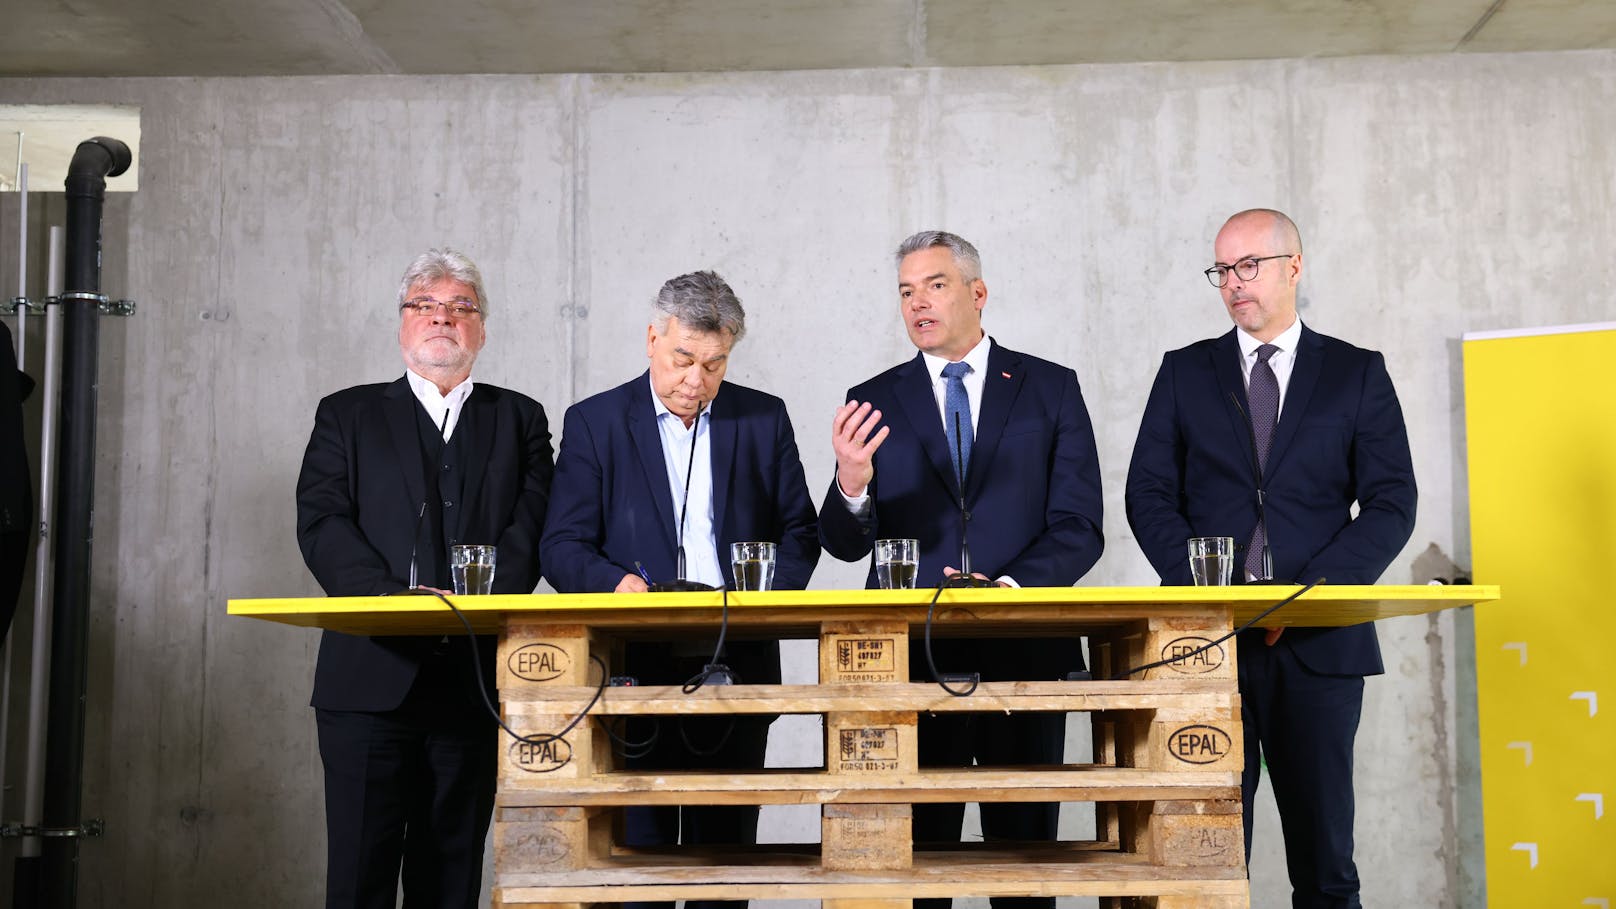 In Wien-Floridsdorf bei der Baustelle des Wohnviertels "Am Hirschfeld" haben Bundeskanzler Karl Nehammer (ÖVP) und Vizekanzler Werner Kogler (Grüne) am Dienstag ihr umfangreiches Wohnpaket präsentiert.